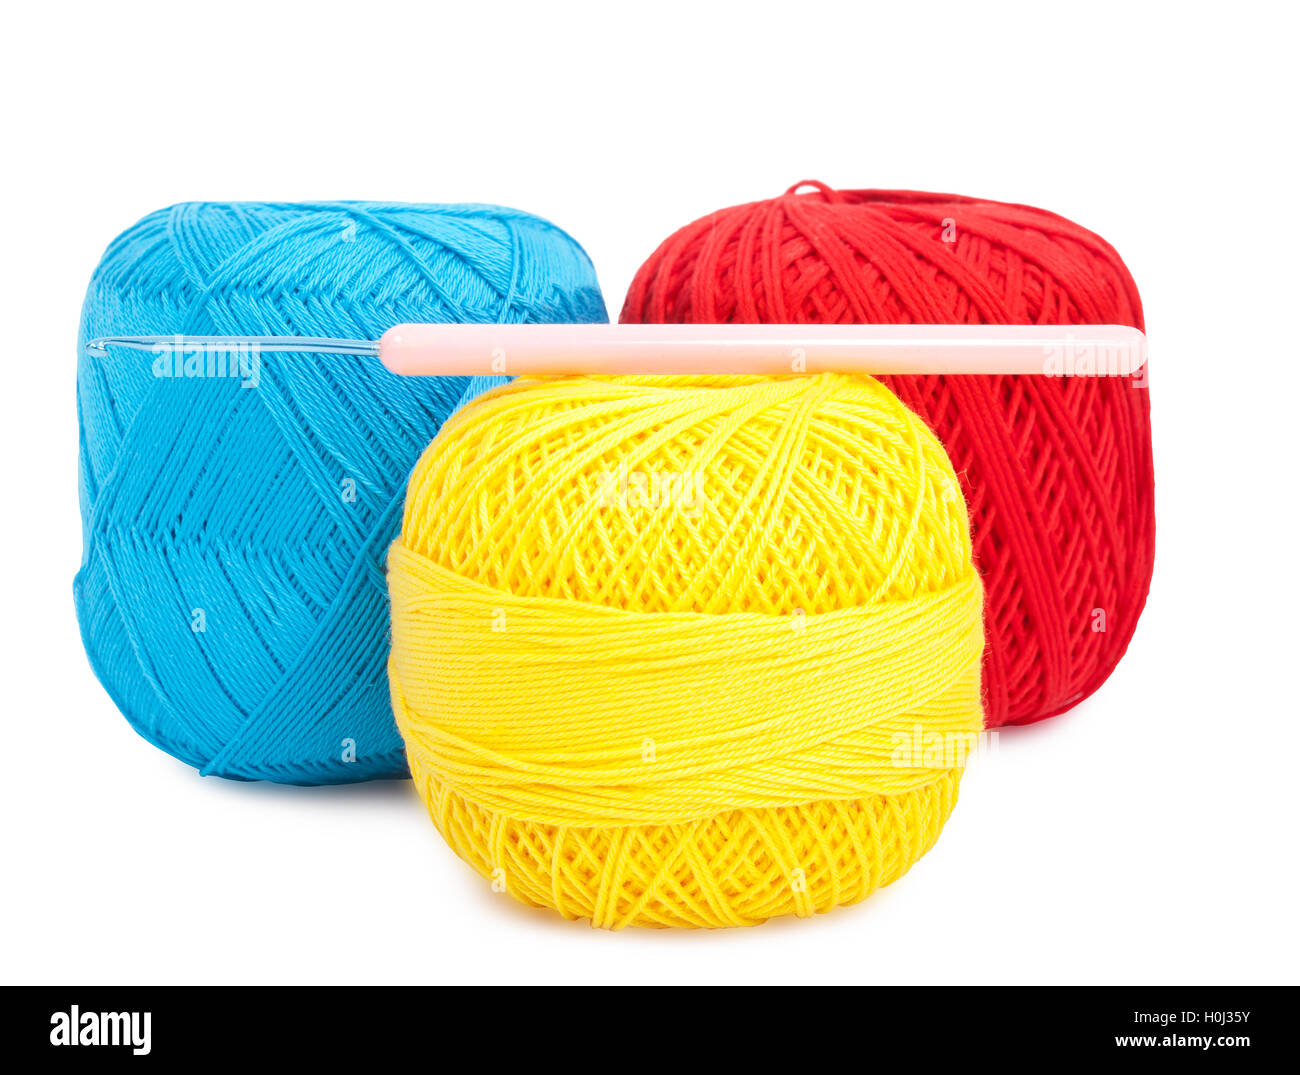 Balls of yarn and needle Stock Photo